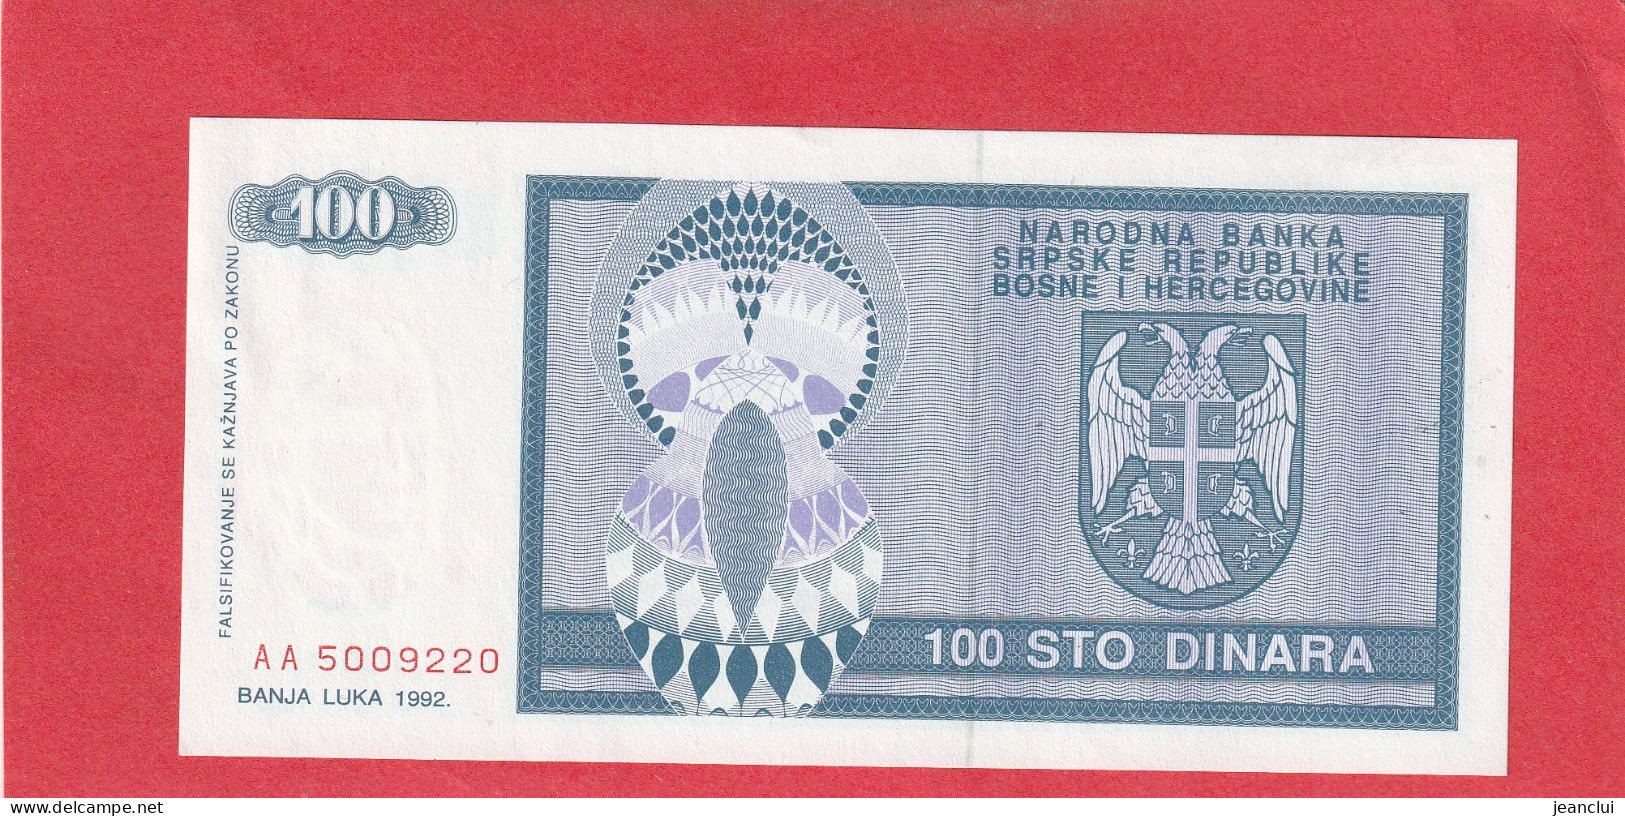 NATIONAL BANK OF SERBIAN REPUBLIC OF BOSNIA & HERZEGOVINA . 100 DINARA.  N° AA 5009220   2 SCANNES  .  ETAT LUXE - Bosnia Erzegovina